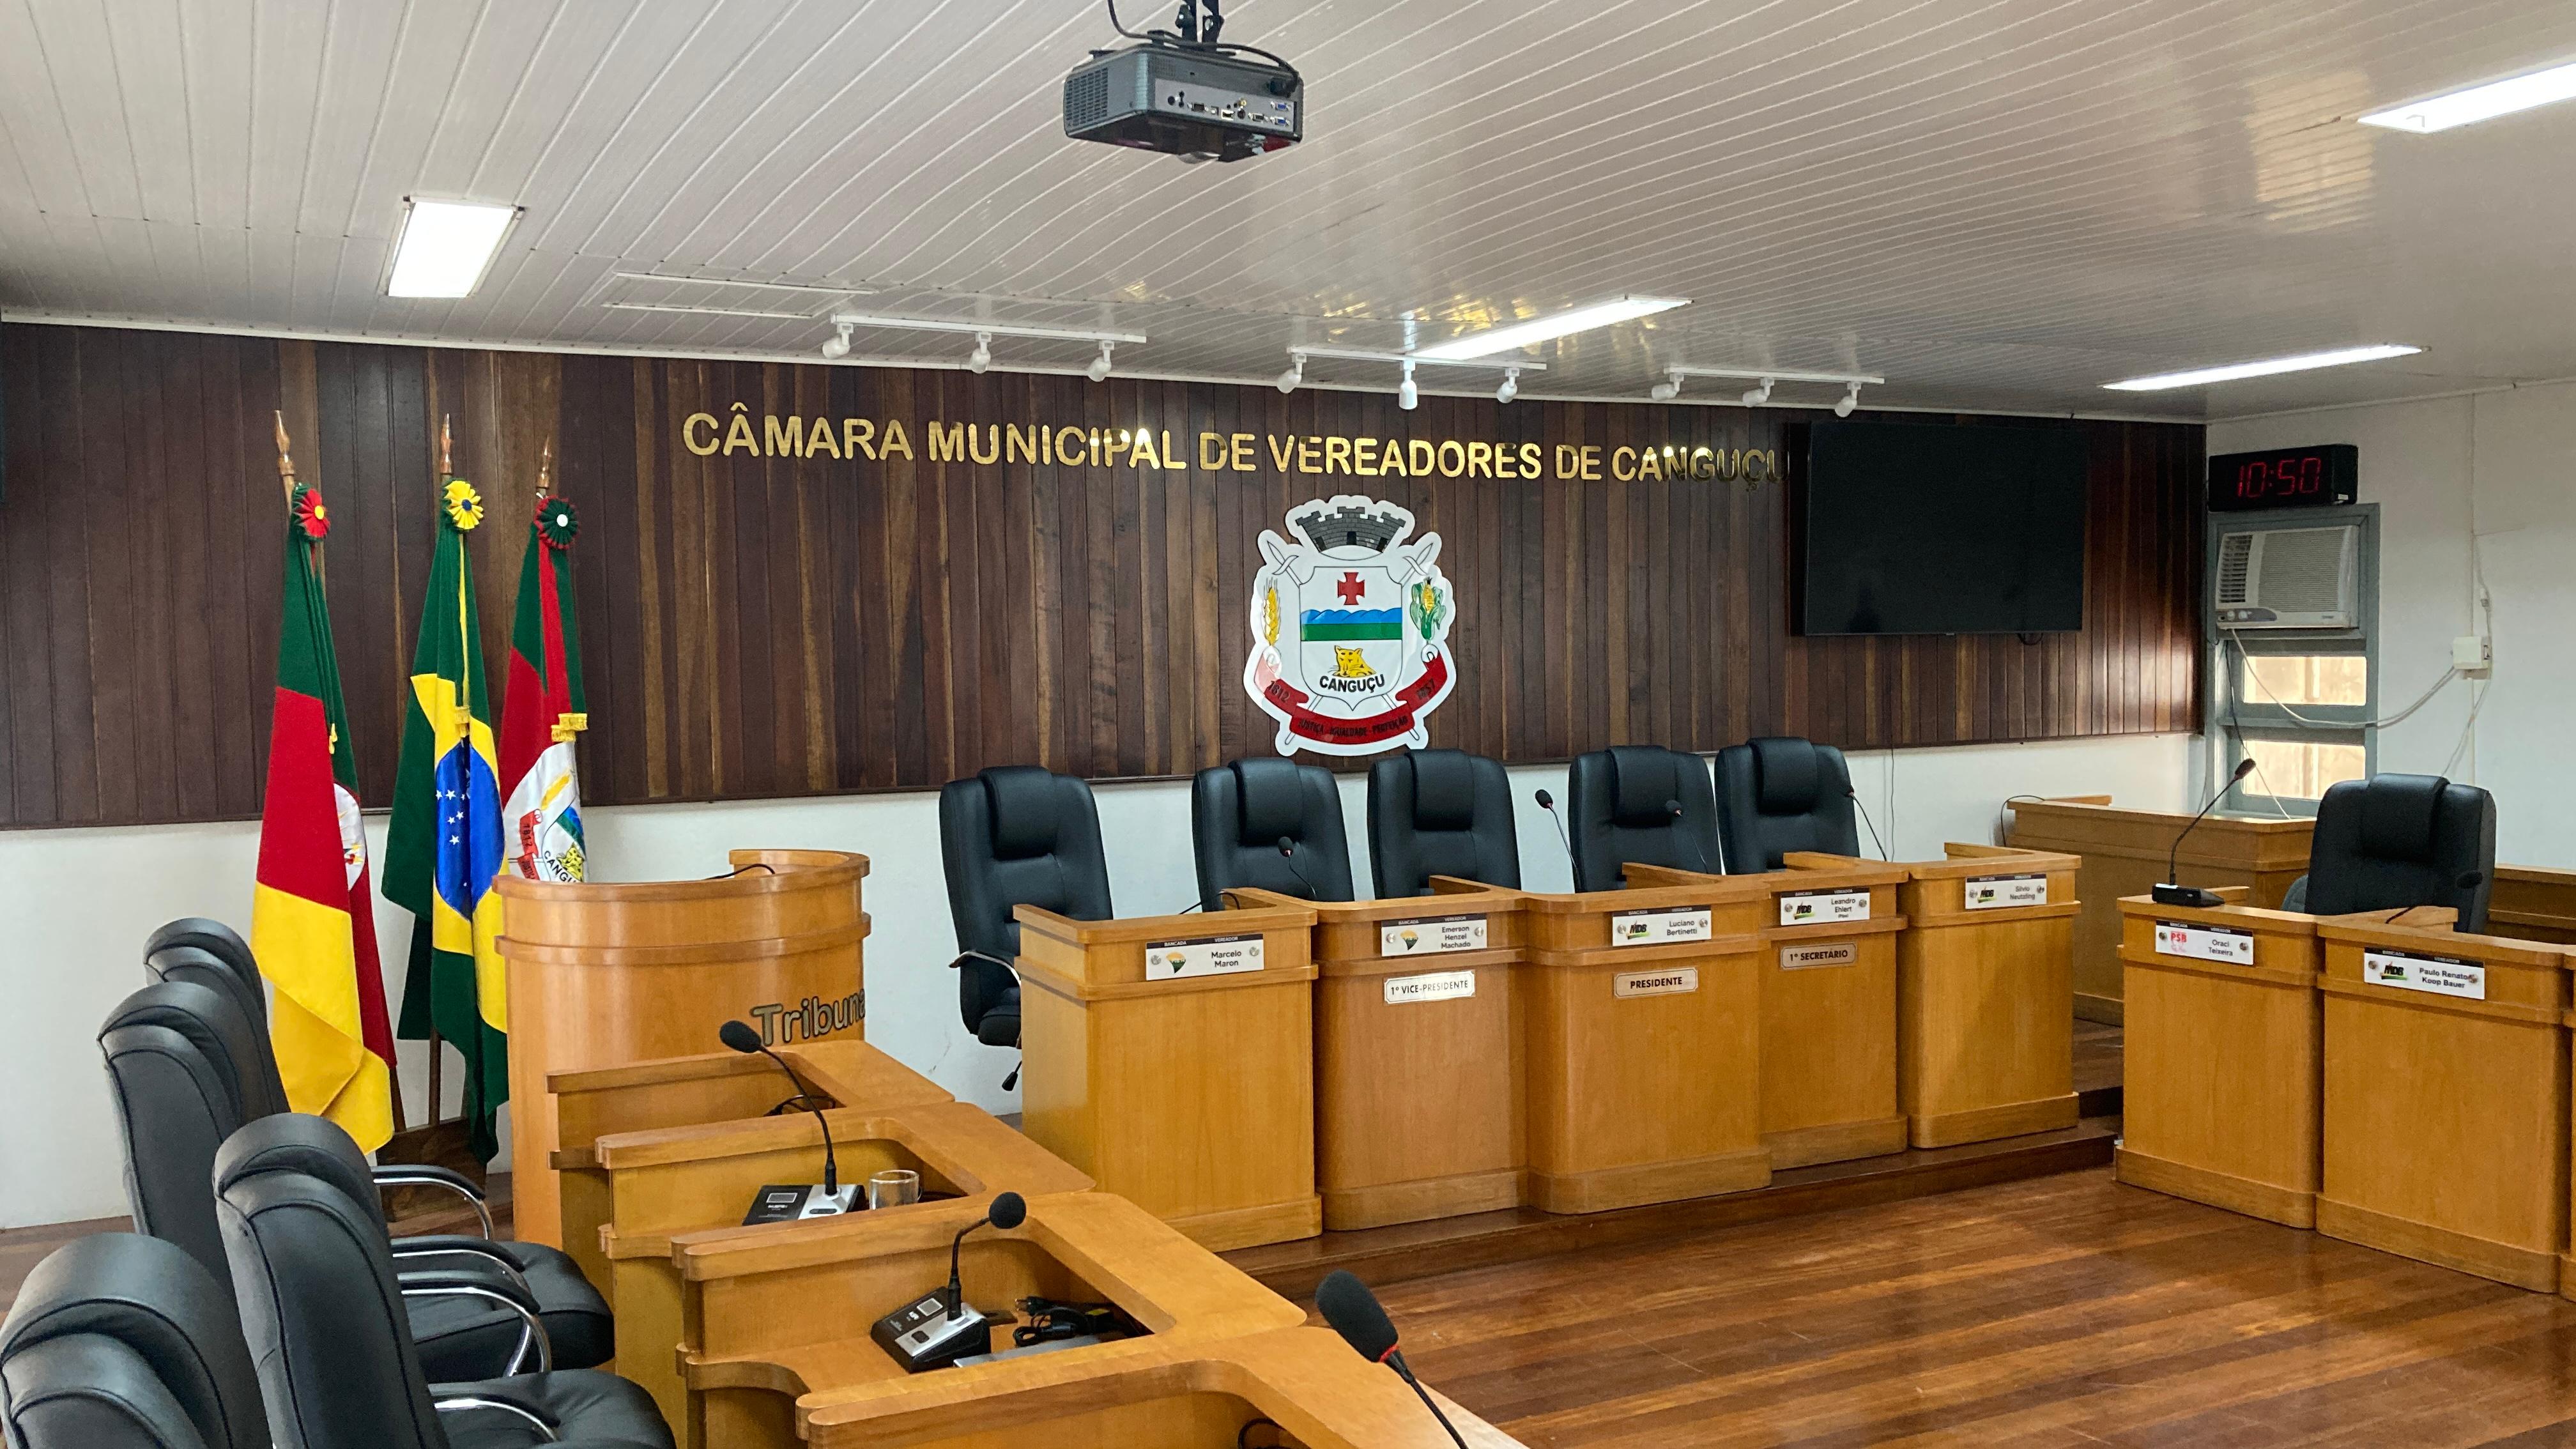 Câmara realiza Audiência Pública, no dia 7, sobre preços das tarifas de pedágio na Zona Sul  - Câmara de vereadores de Canguçu